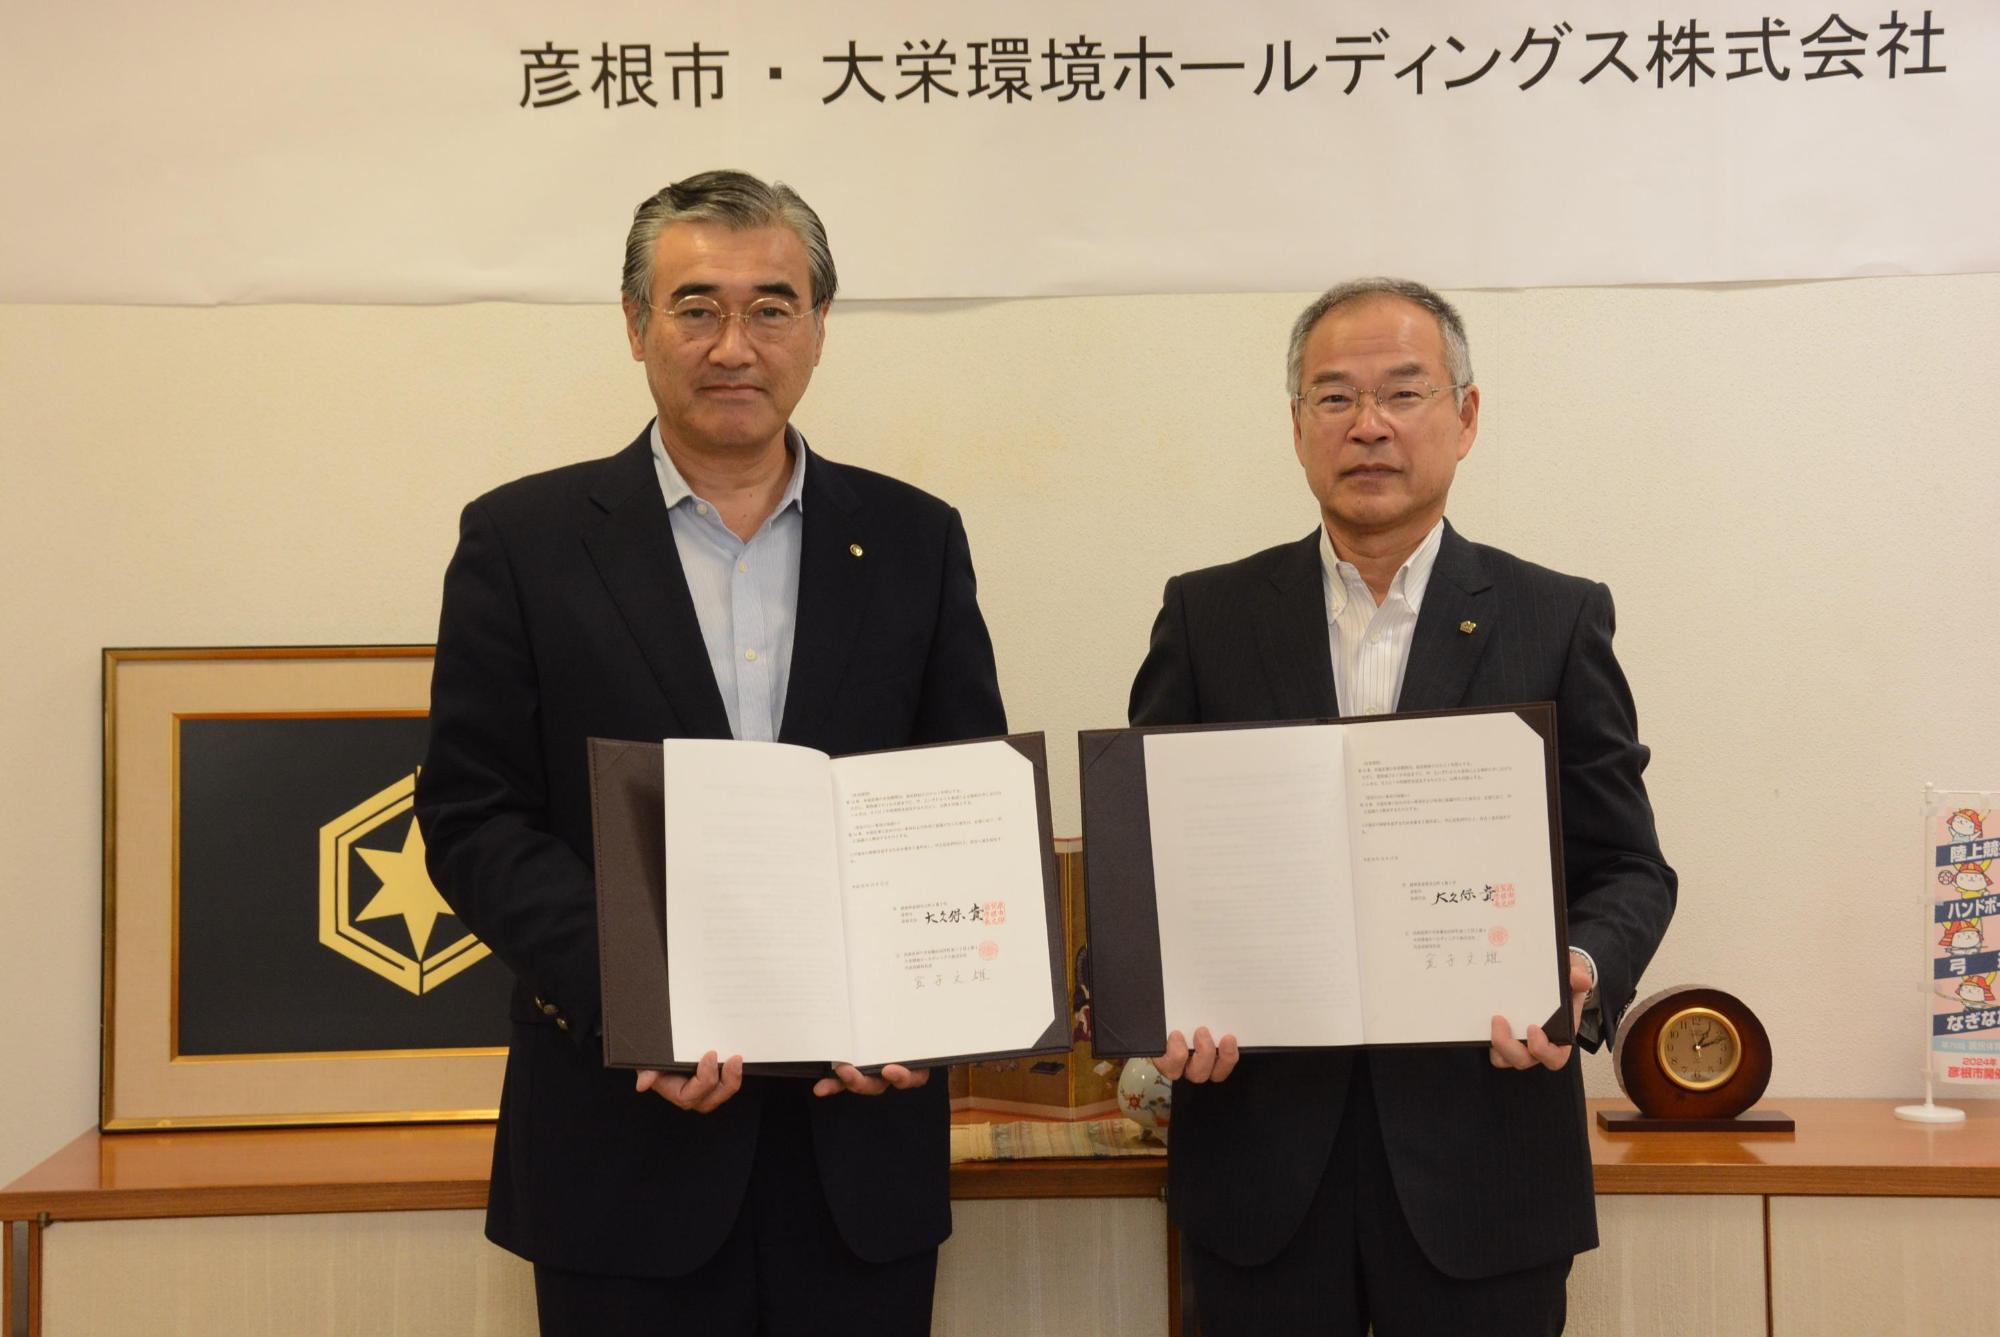 調印式での大久保彦根市長 と 金子代表取締役社長が二人並んだ写真